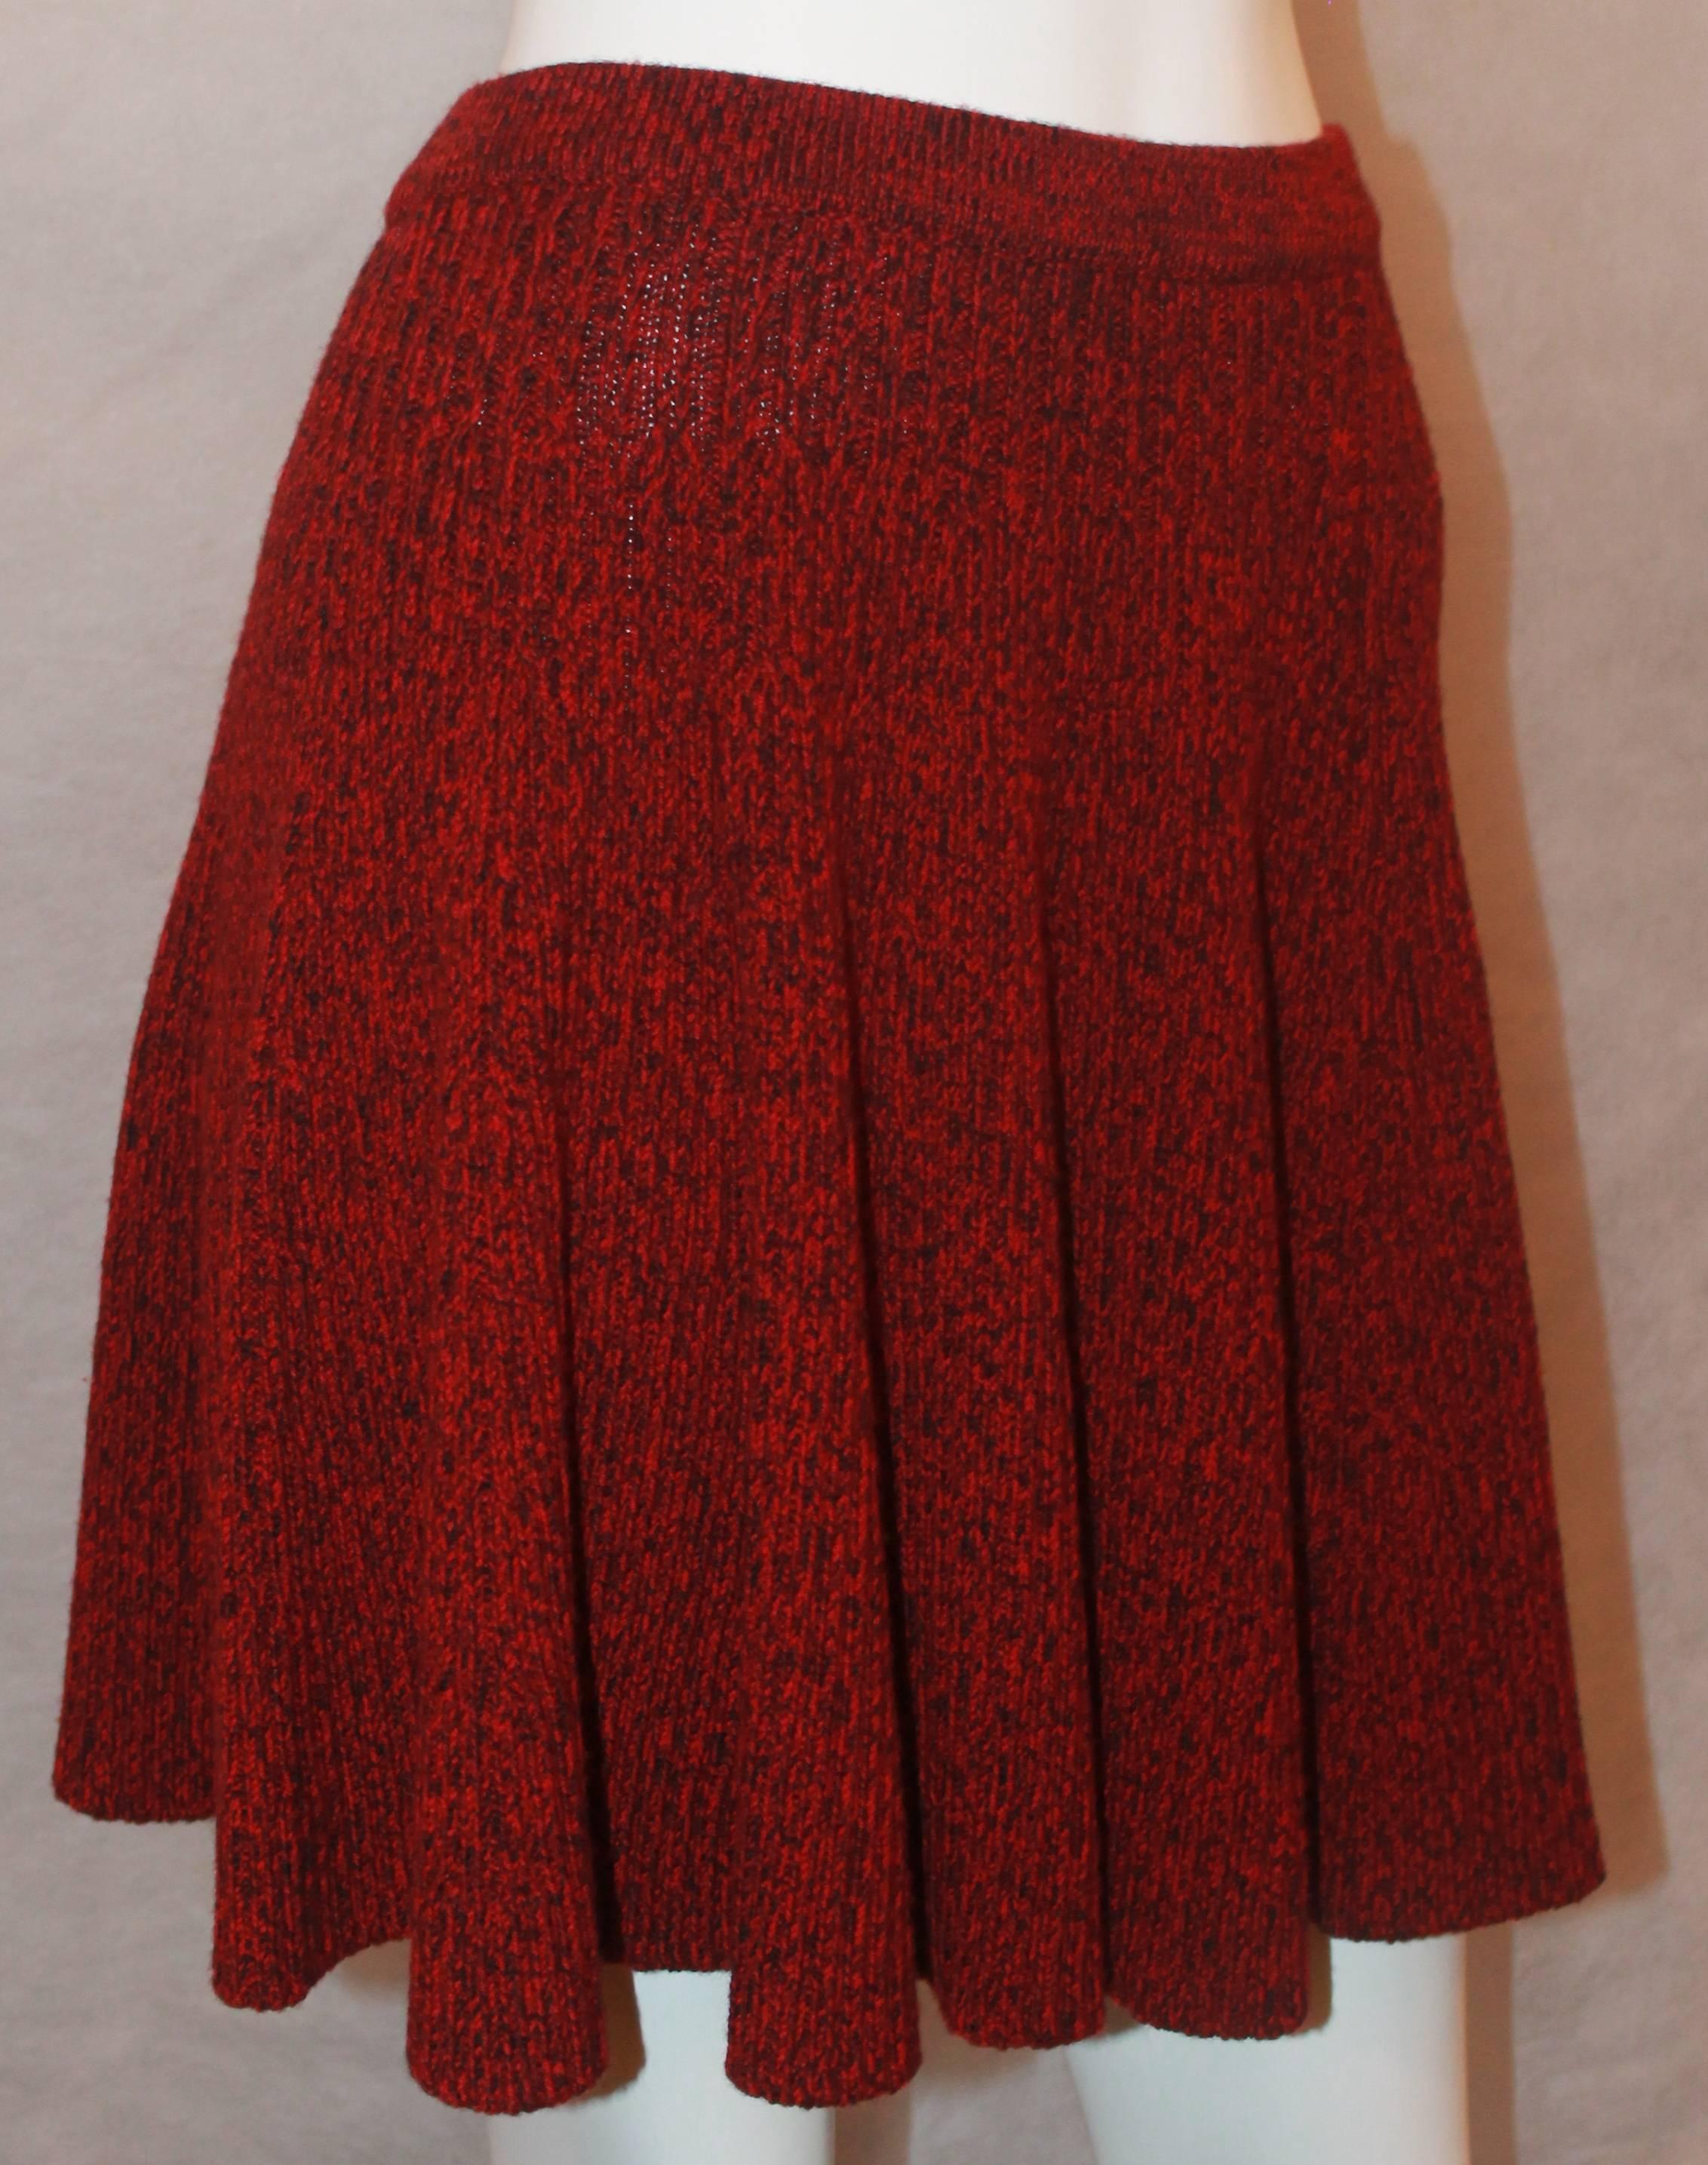 Alexander McQueen Roter & Schwarzer Woll-Kabelstrick-Schlagrock mit elastischer Taille - M.  Dieser schöne Rock in ausgezeichnetem Zustand.  Er ist der perfekte Rock für unterwegs.  Es hat einen schönen Zopfstrick-Look aus Wolle und eine weite